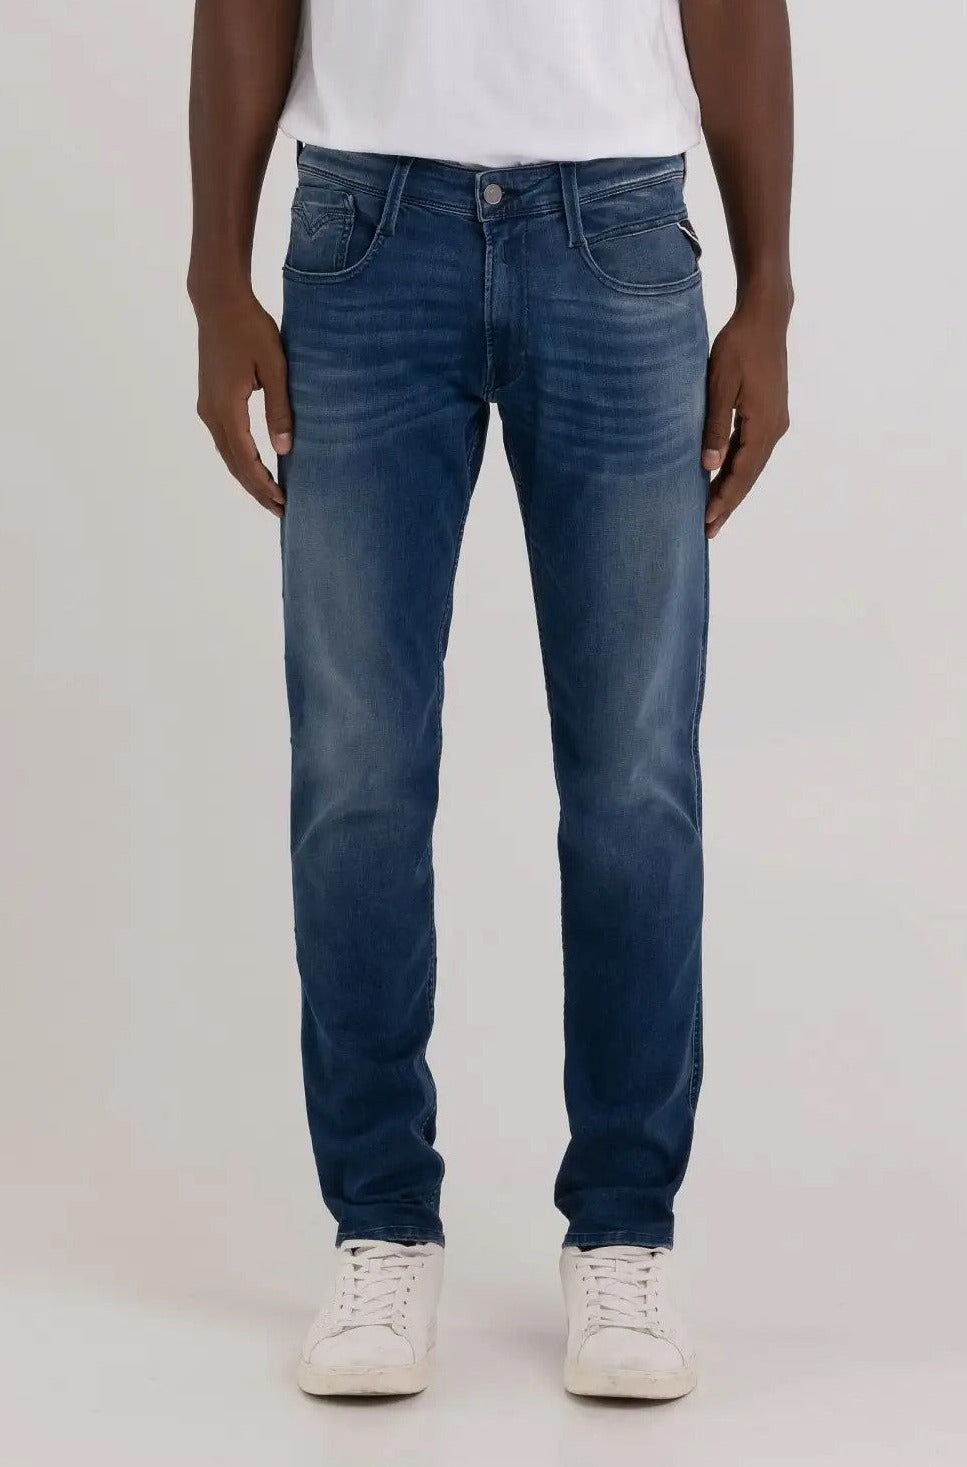 Replay Slim Fit Anbass Medium Dark Wash Jeans - M914Y .000.41A 400 #drkruger #dr.kruger #dr kruger